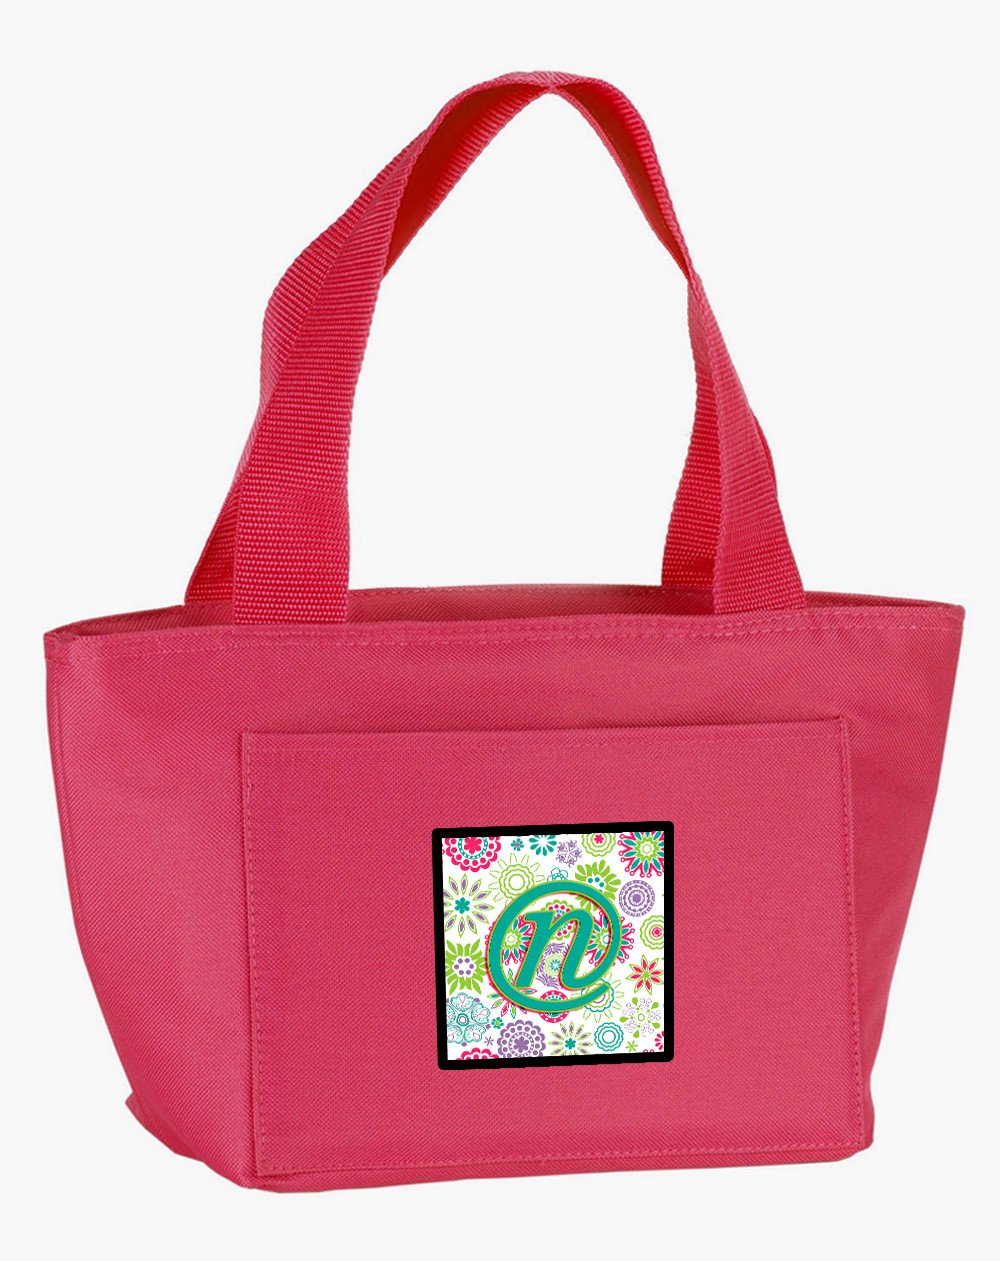 Letter N Flowers Pink Teal Green Initial Lunch Bag CJ2011-NPK-8808 by Caroline's Treasures